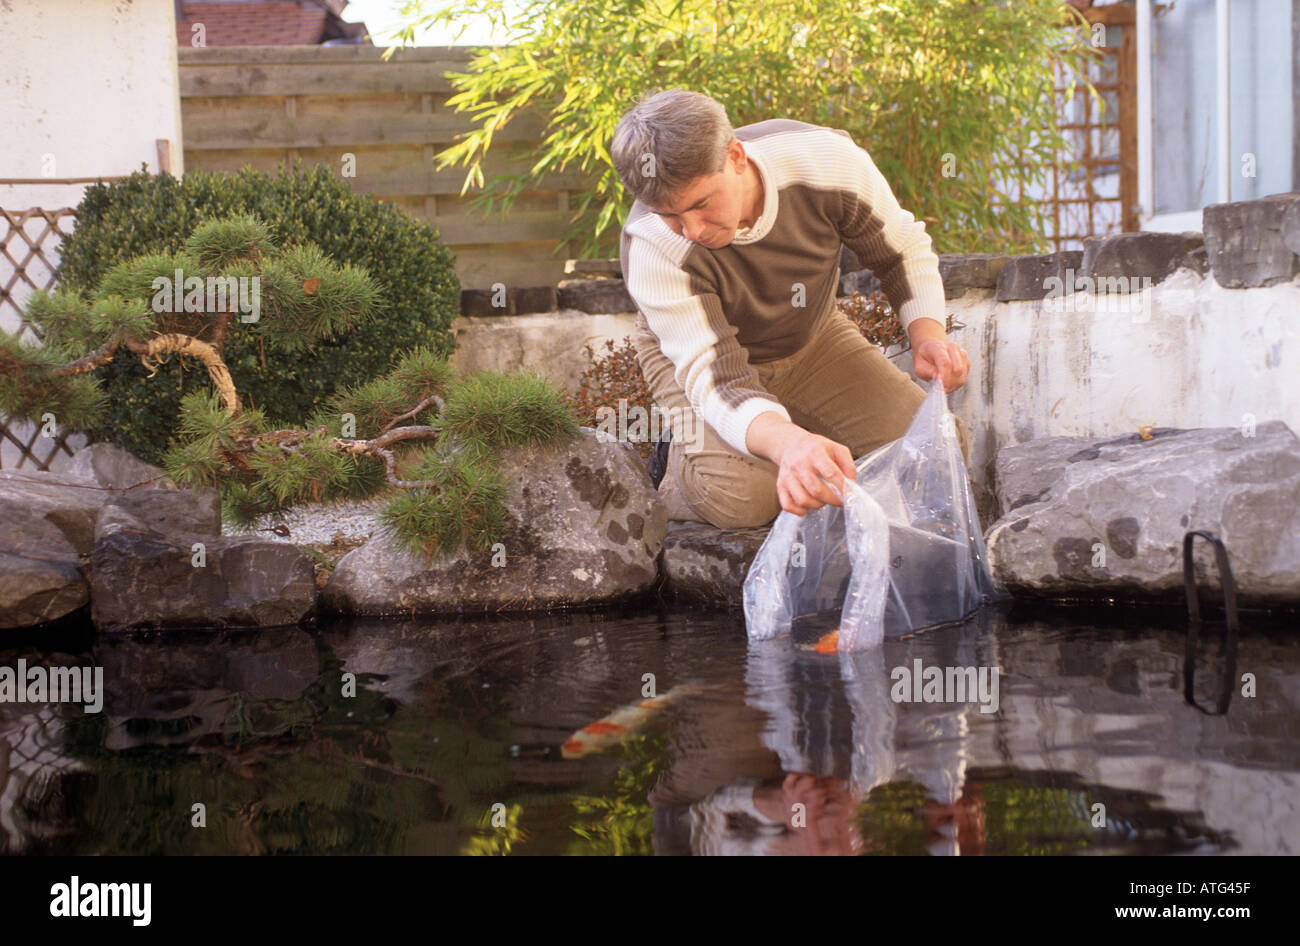 man putting kois into pond Stock Photo